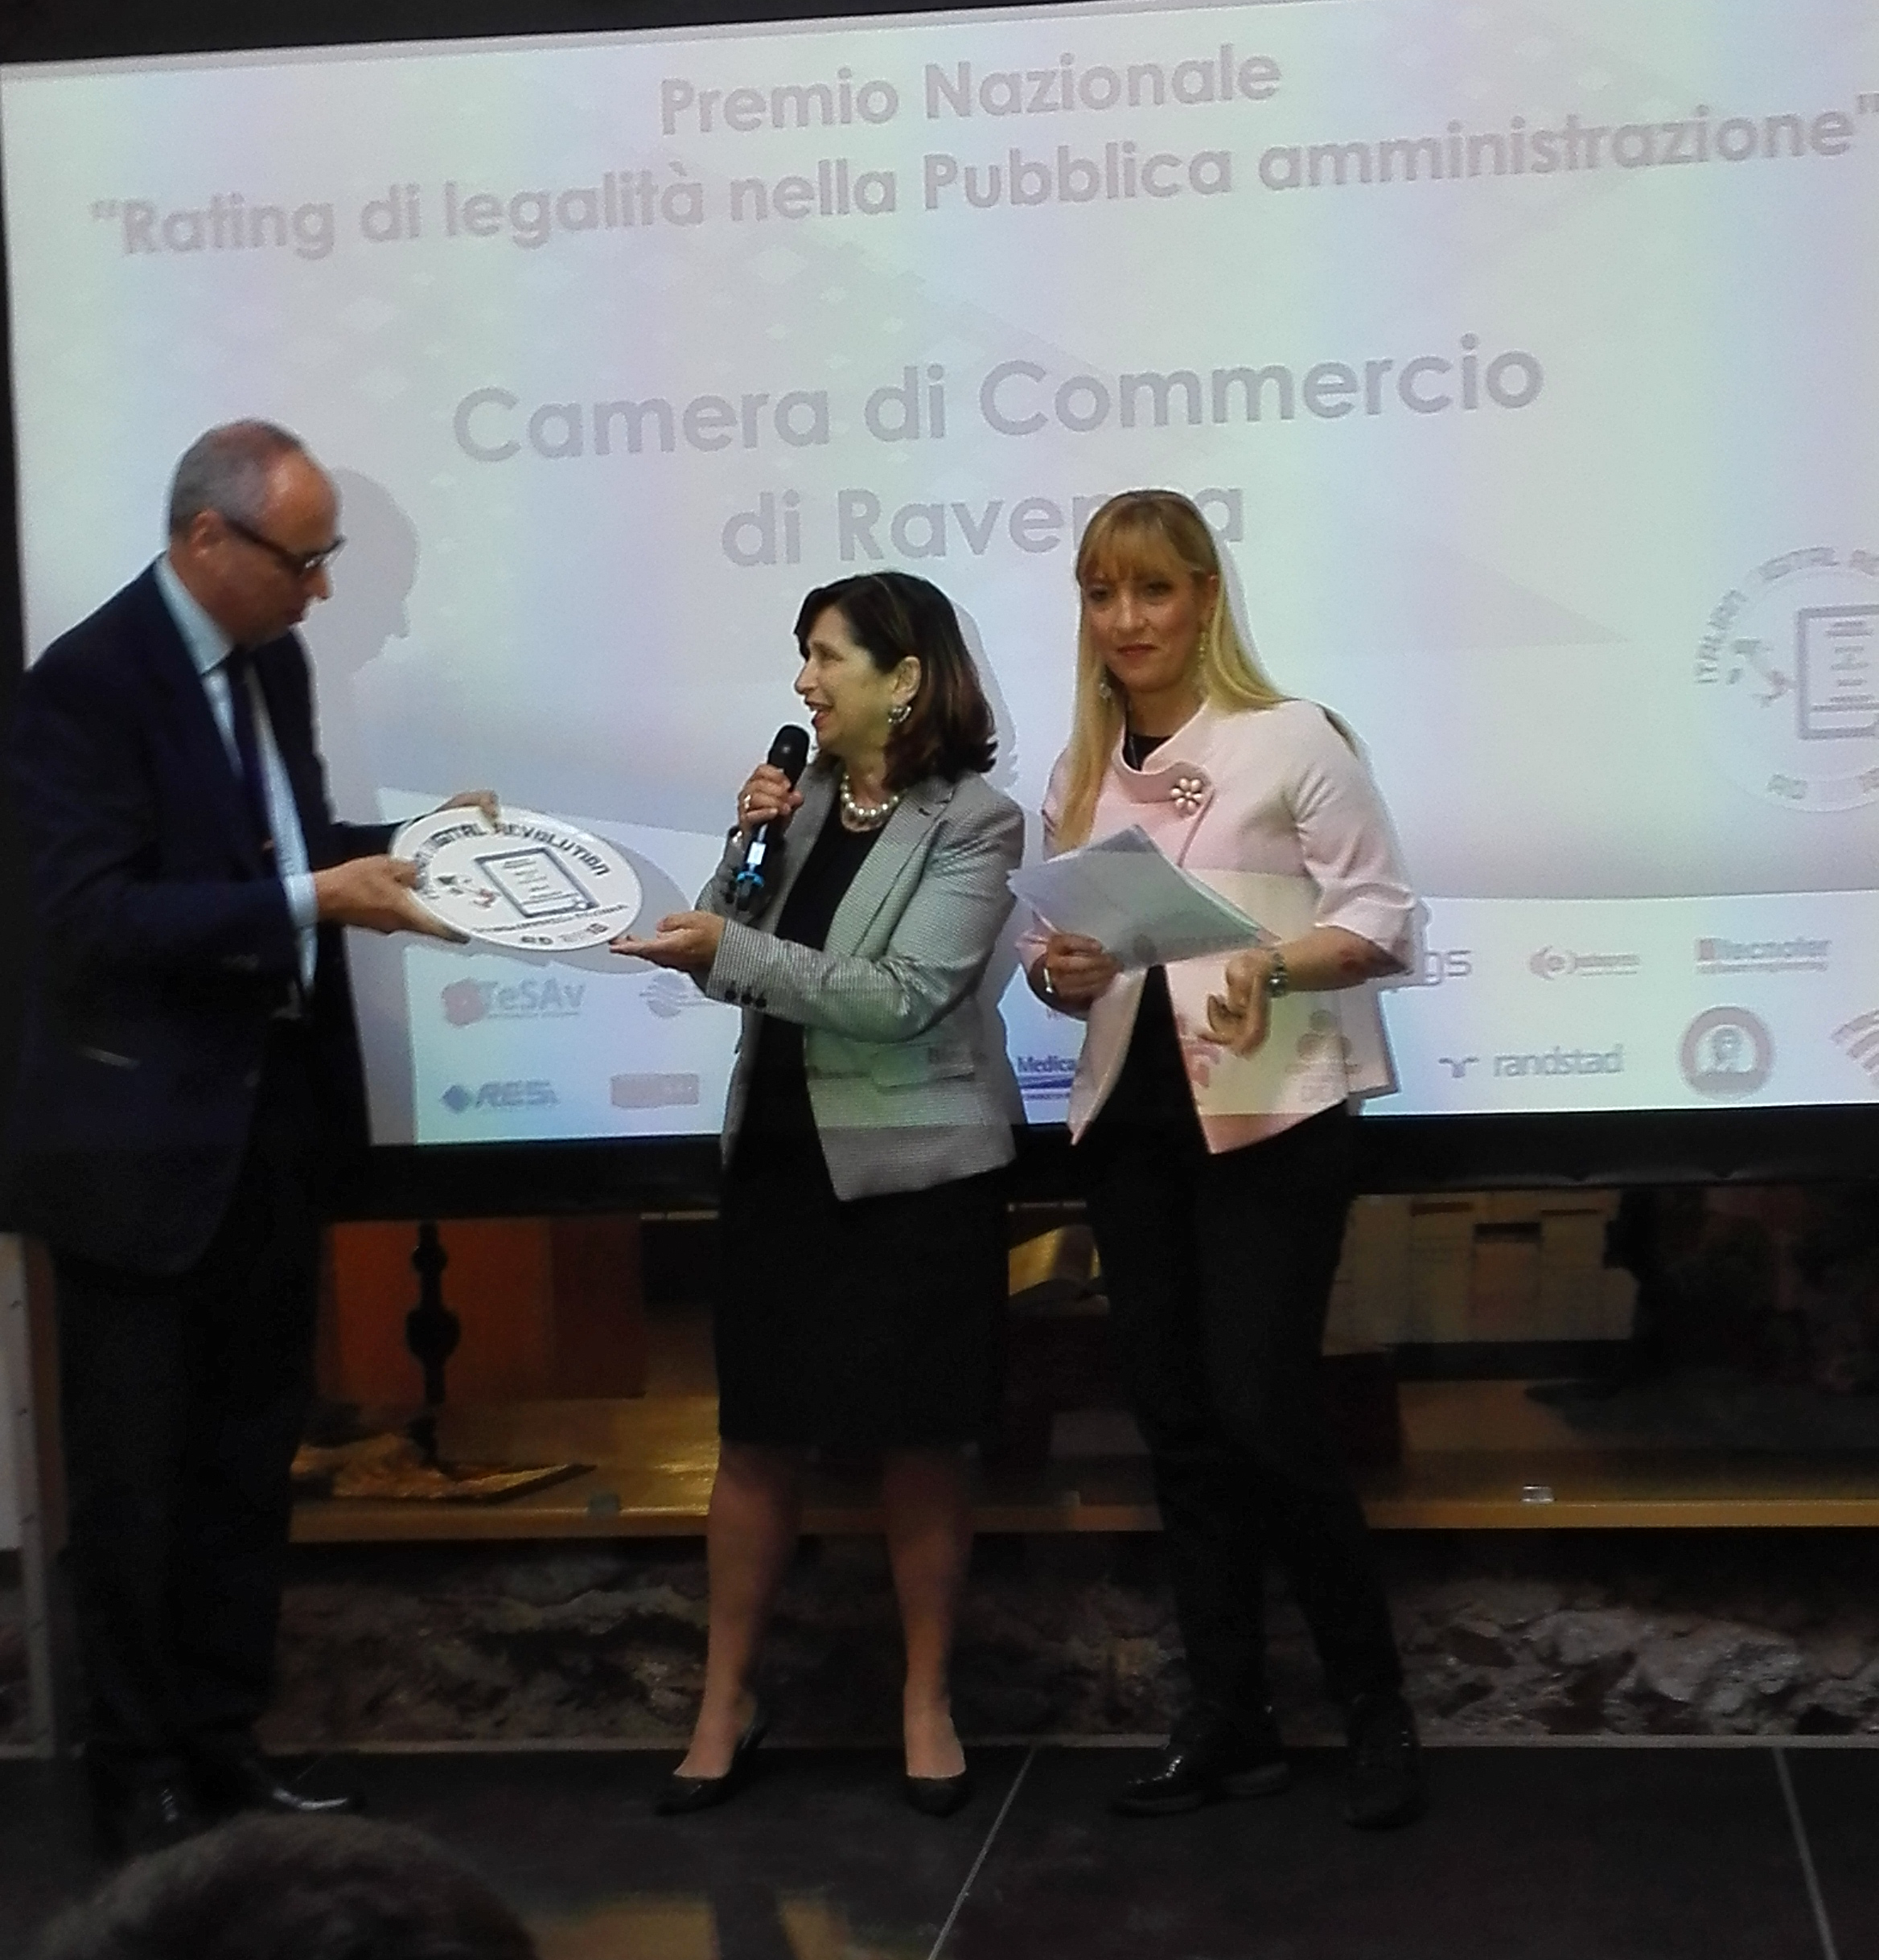 Il primo "Premio Rating di Legalità delle Pubbliche Amministrazioni" alla Camera di commercio di Ravenna